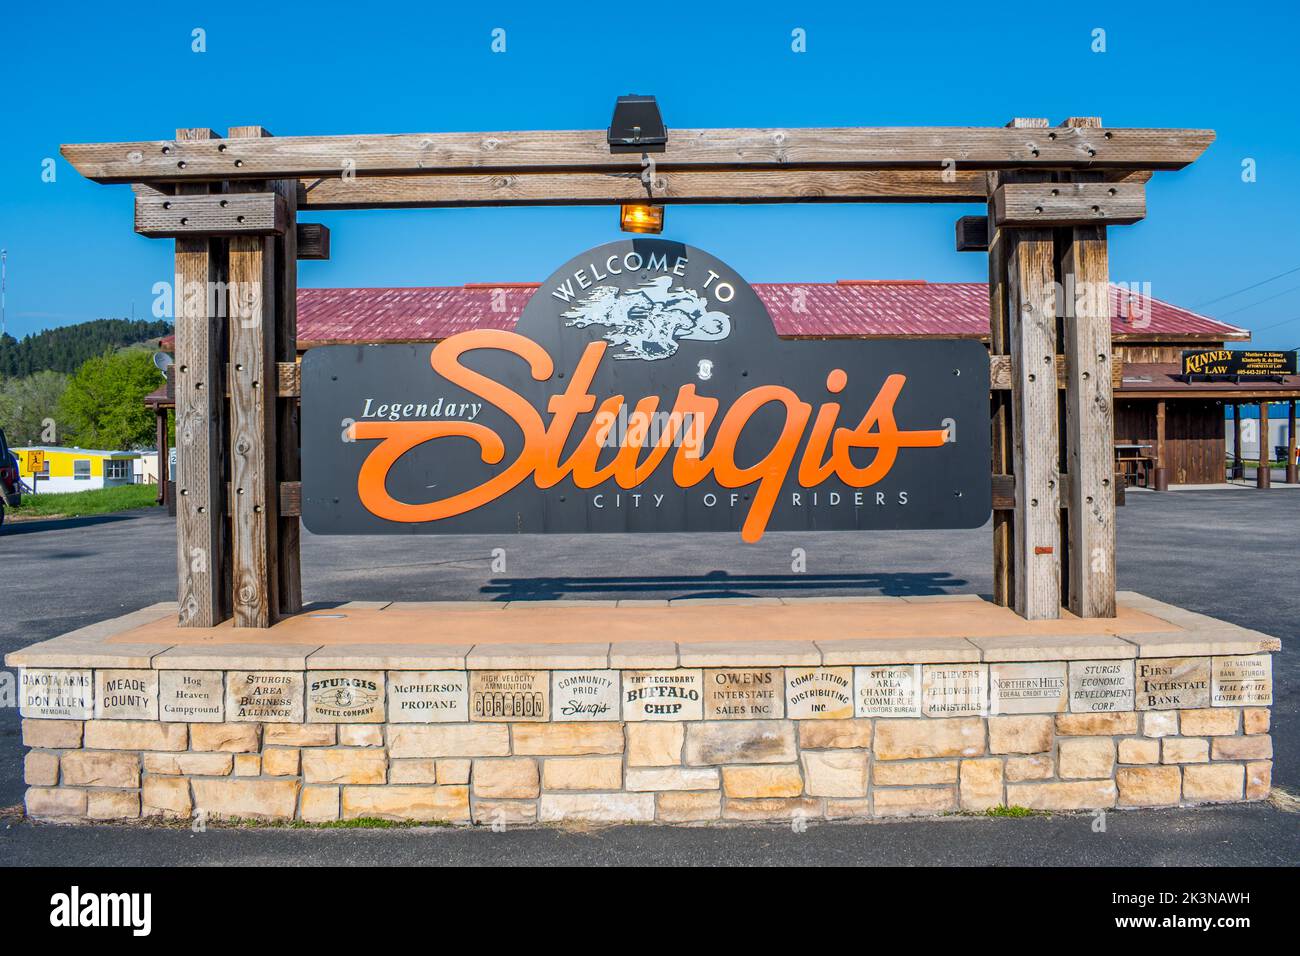 An entrance road going to Sturgis, South Dakota Stock Photo